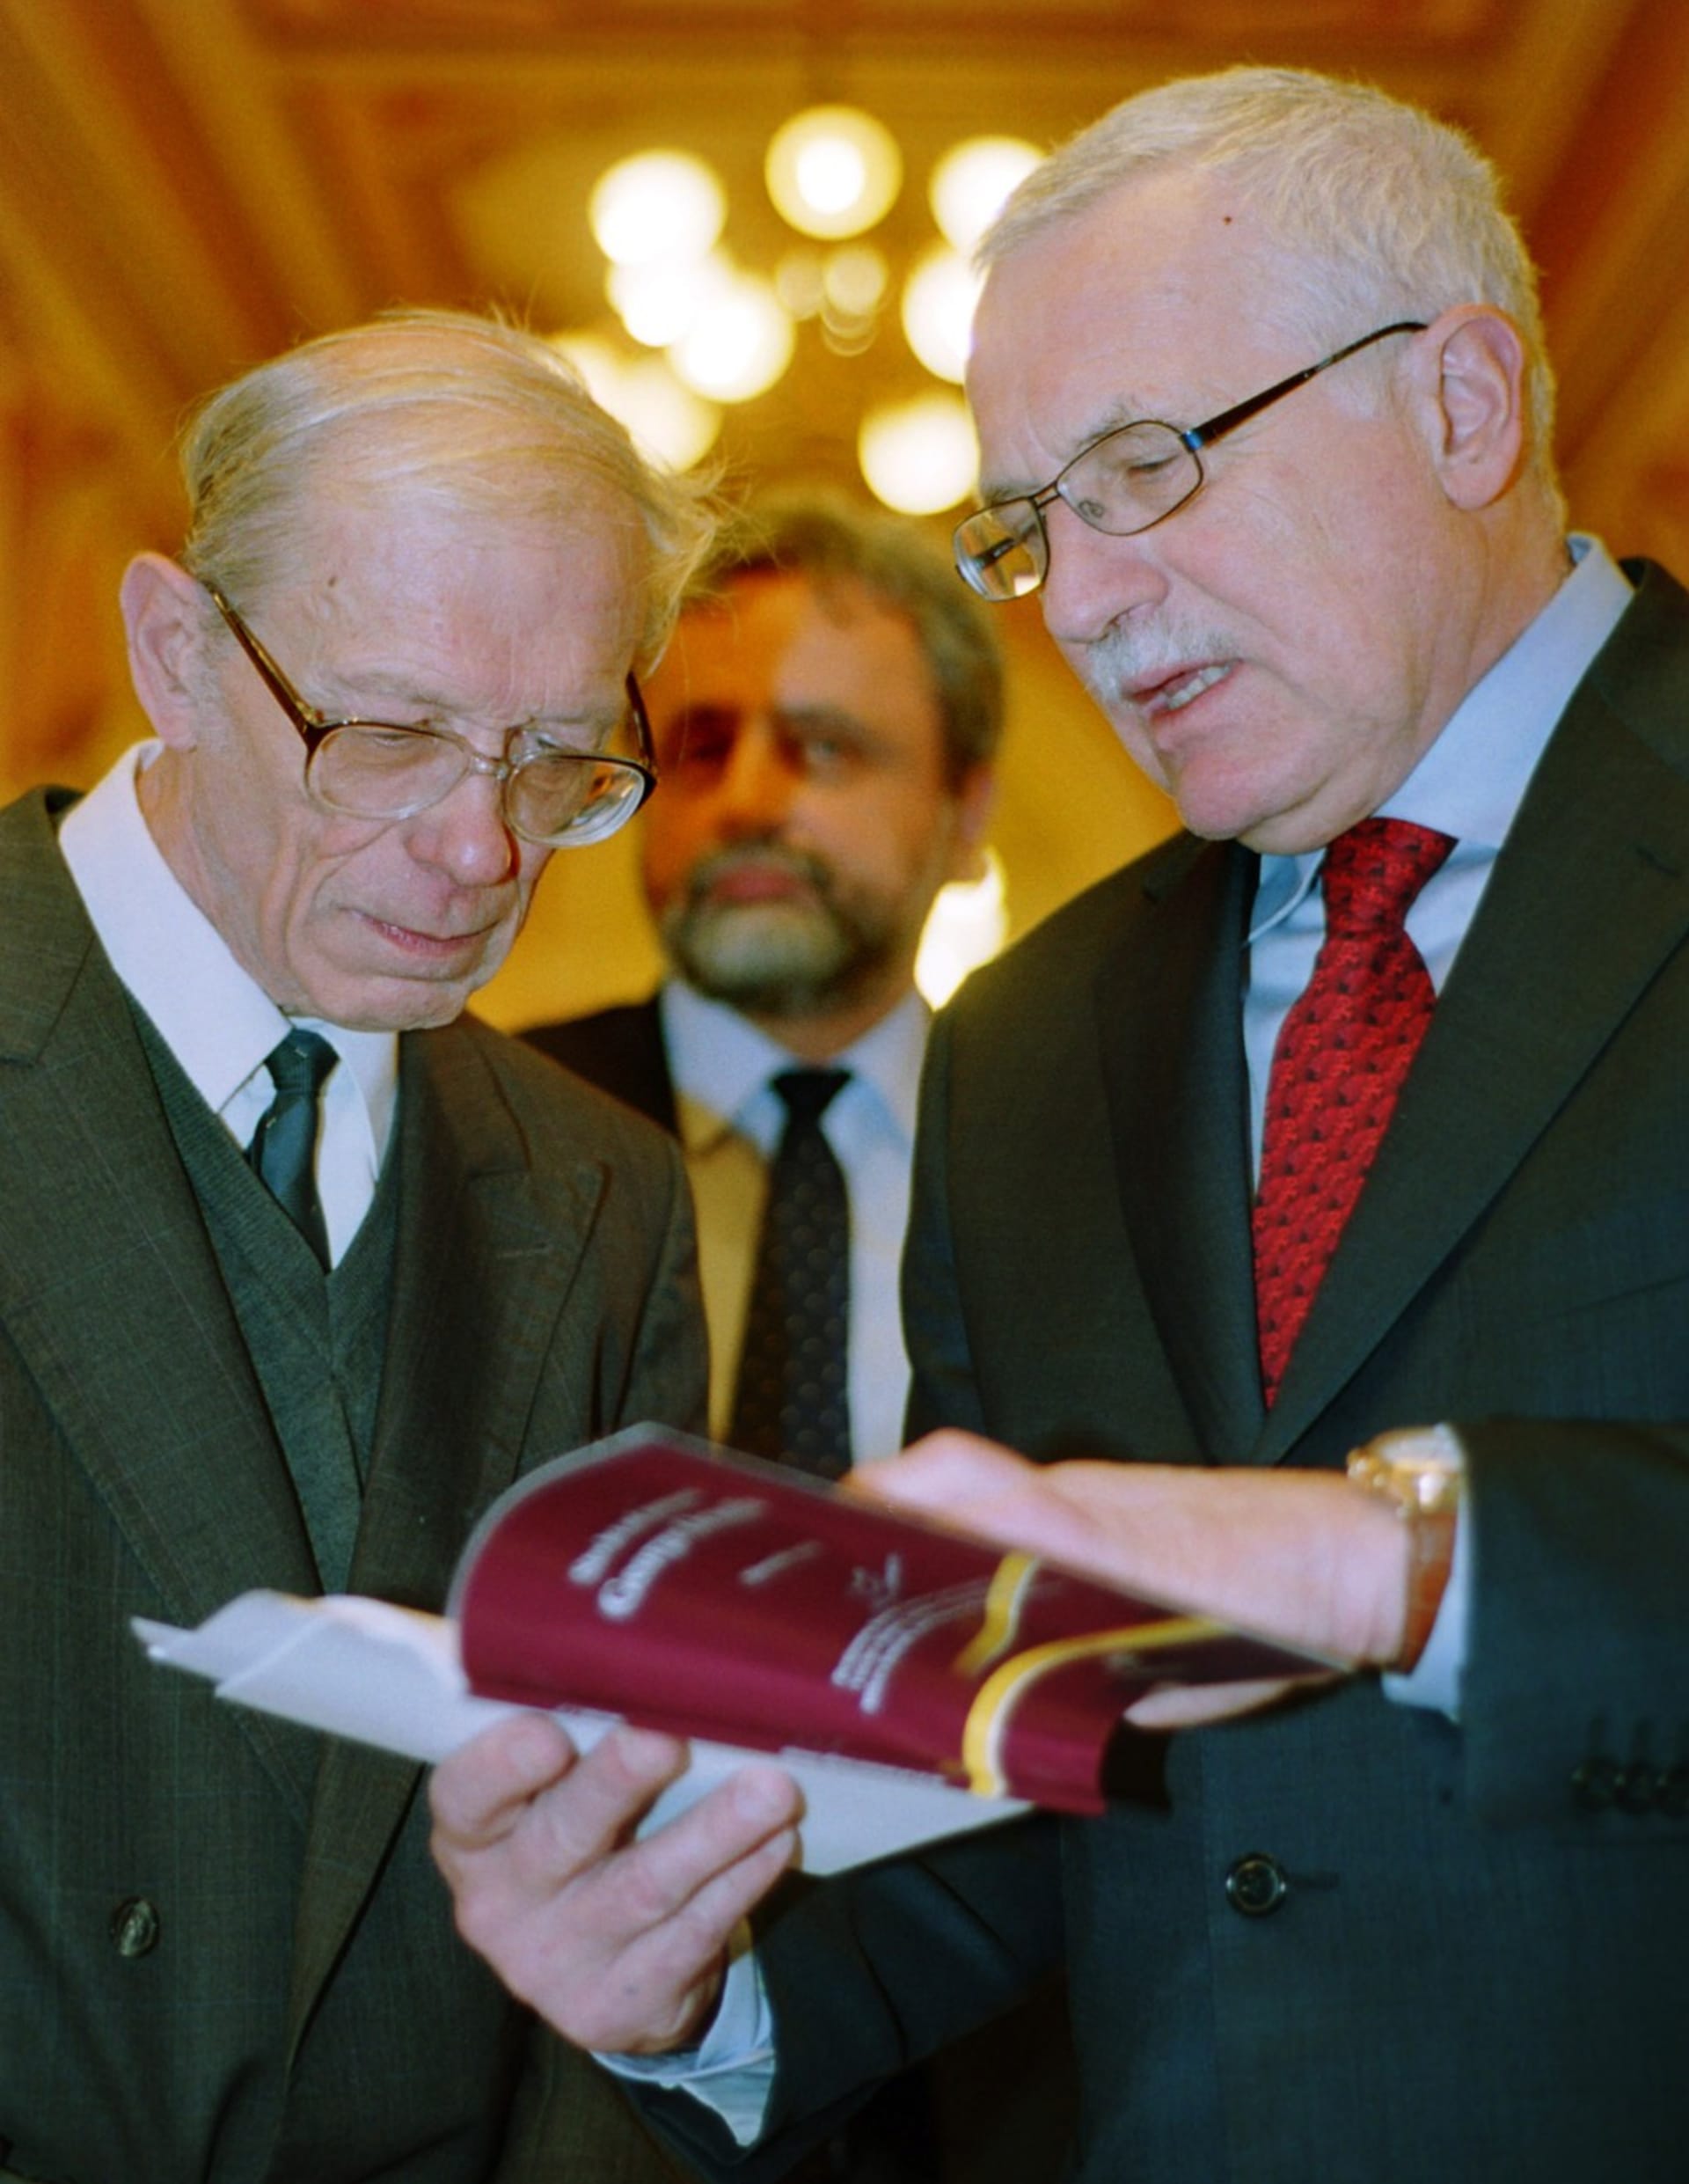 Ve věku 96 let zemřel významný historik filozofie Milan Sobotka (na fotografii vlevo).